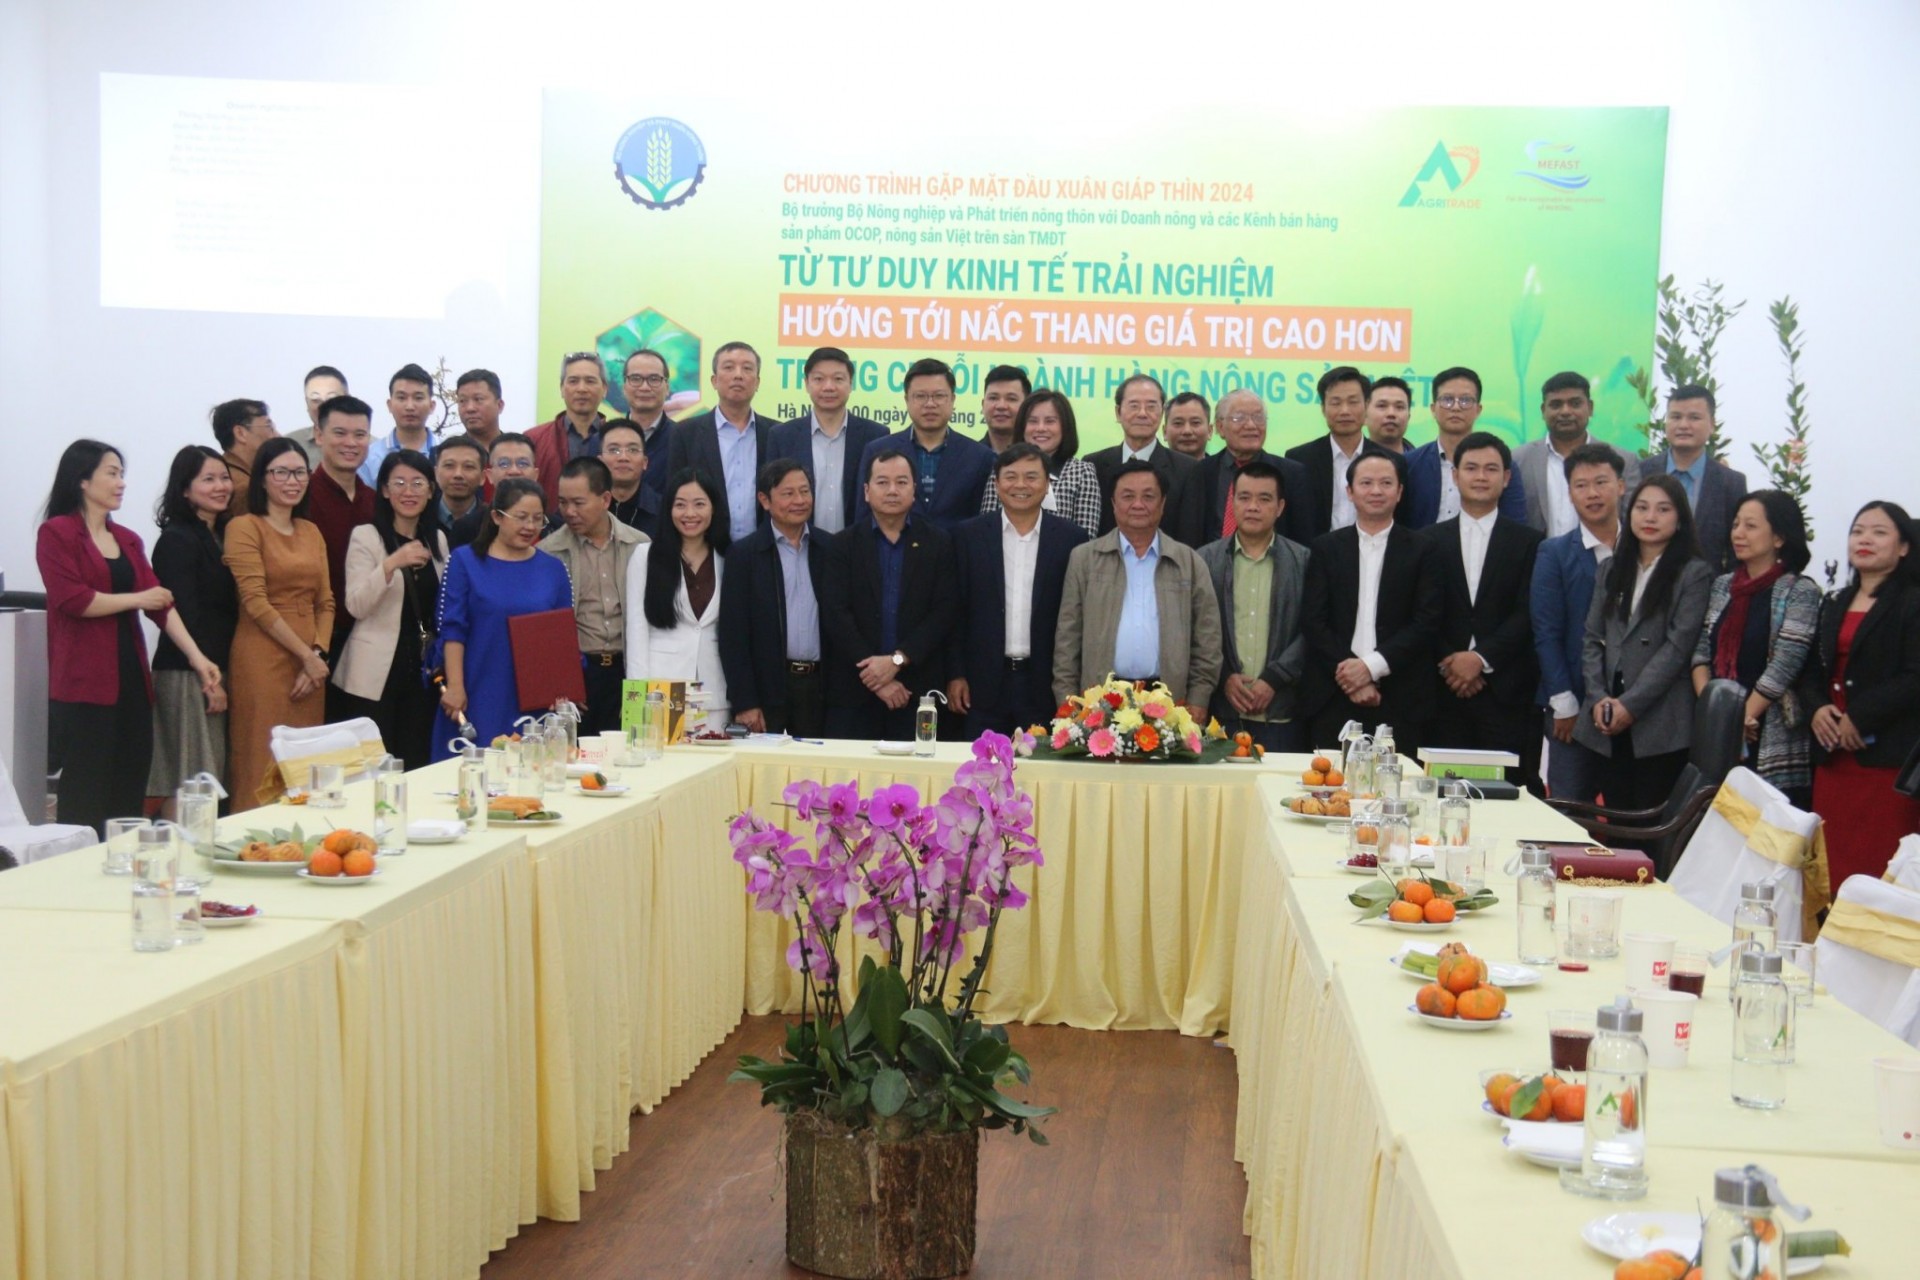 Từ tư duy kinh tế trải nghiệm hướng tới nấc thang giá trị cao hơn trong chuỗi ngành hàng nông sản Việt